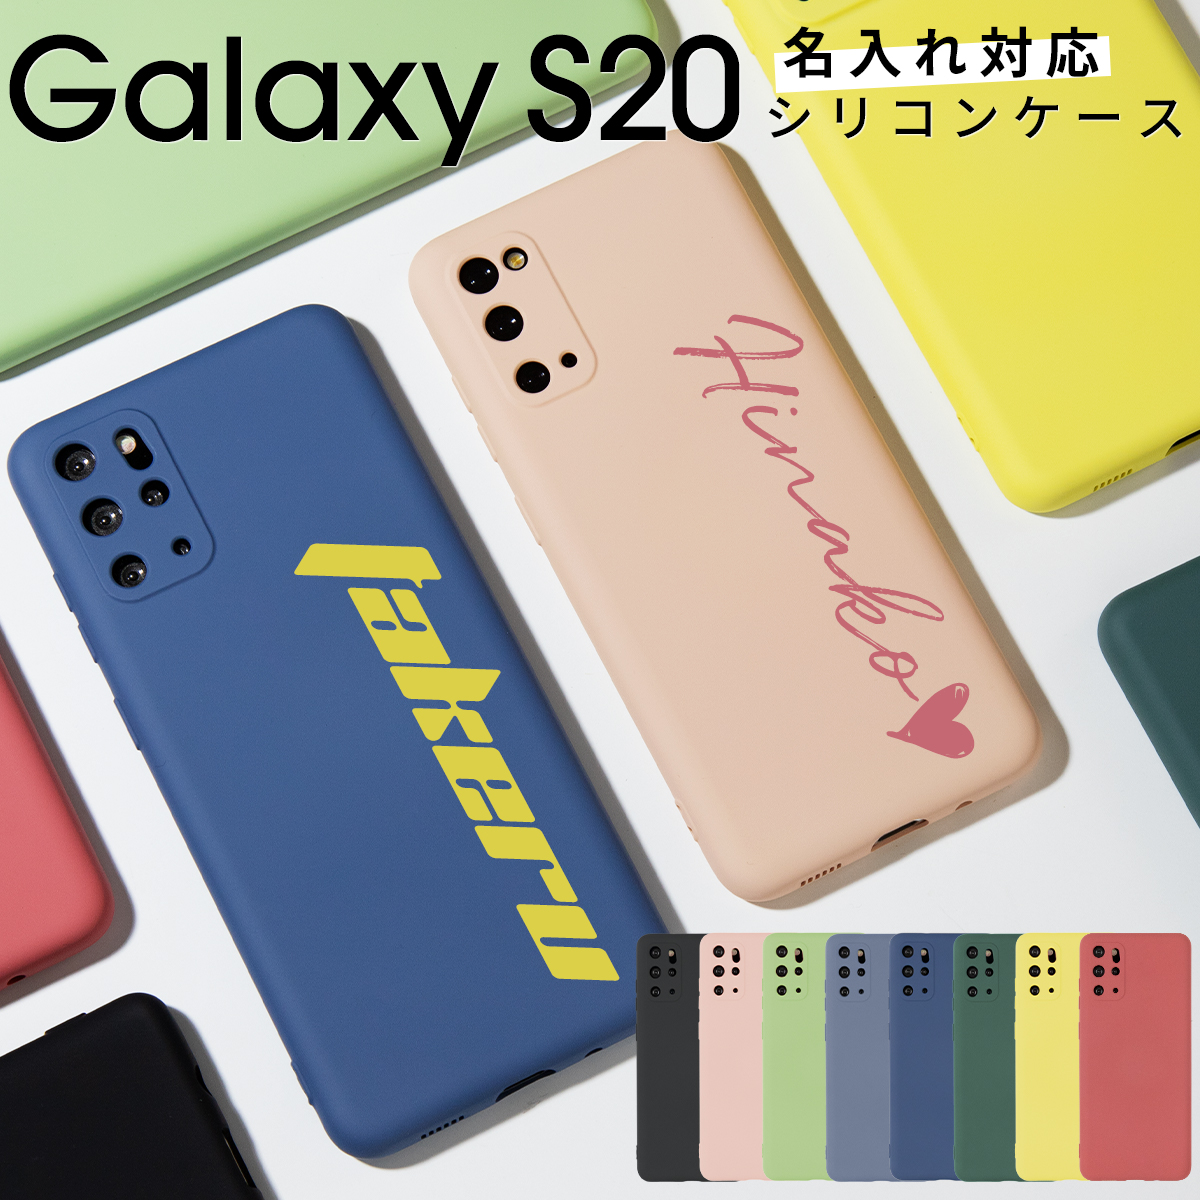 Galaxy S20 5G SC-51A / SCG01のおしゃれで人気なおすすめスマホケースまとめ – スマホケースブランドのCASEPHOLIC  media